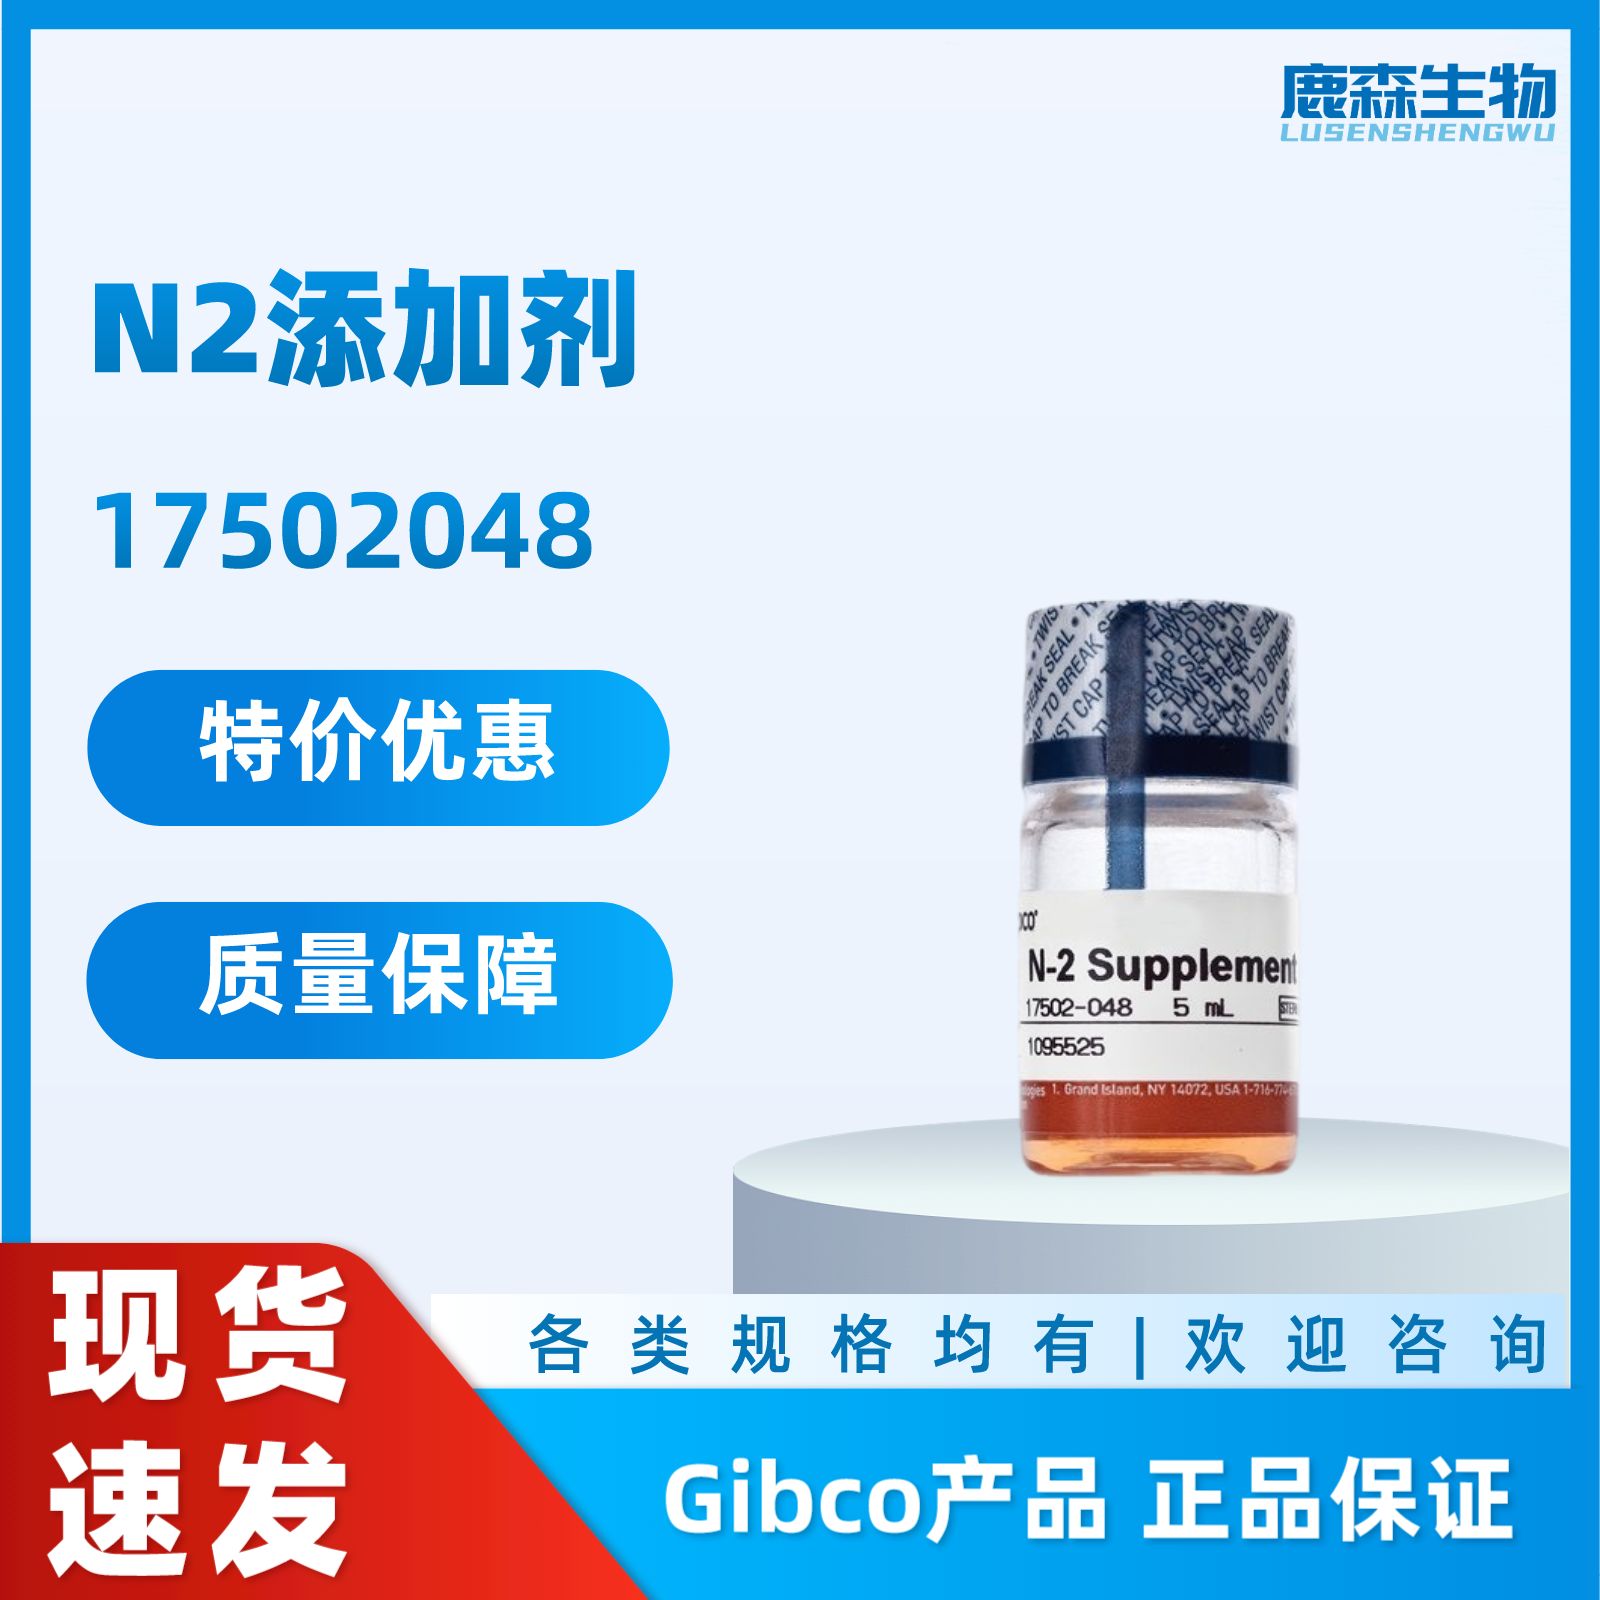 GIBCO N2添加剂试剂 Invitrogen- 17502-048